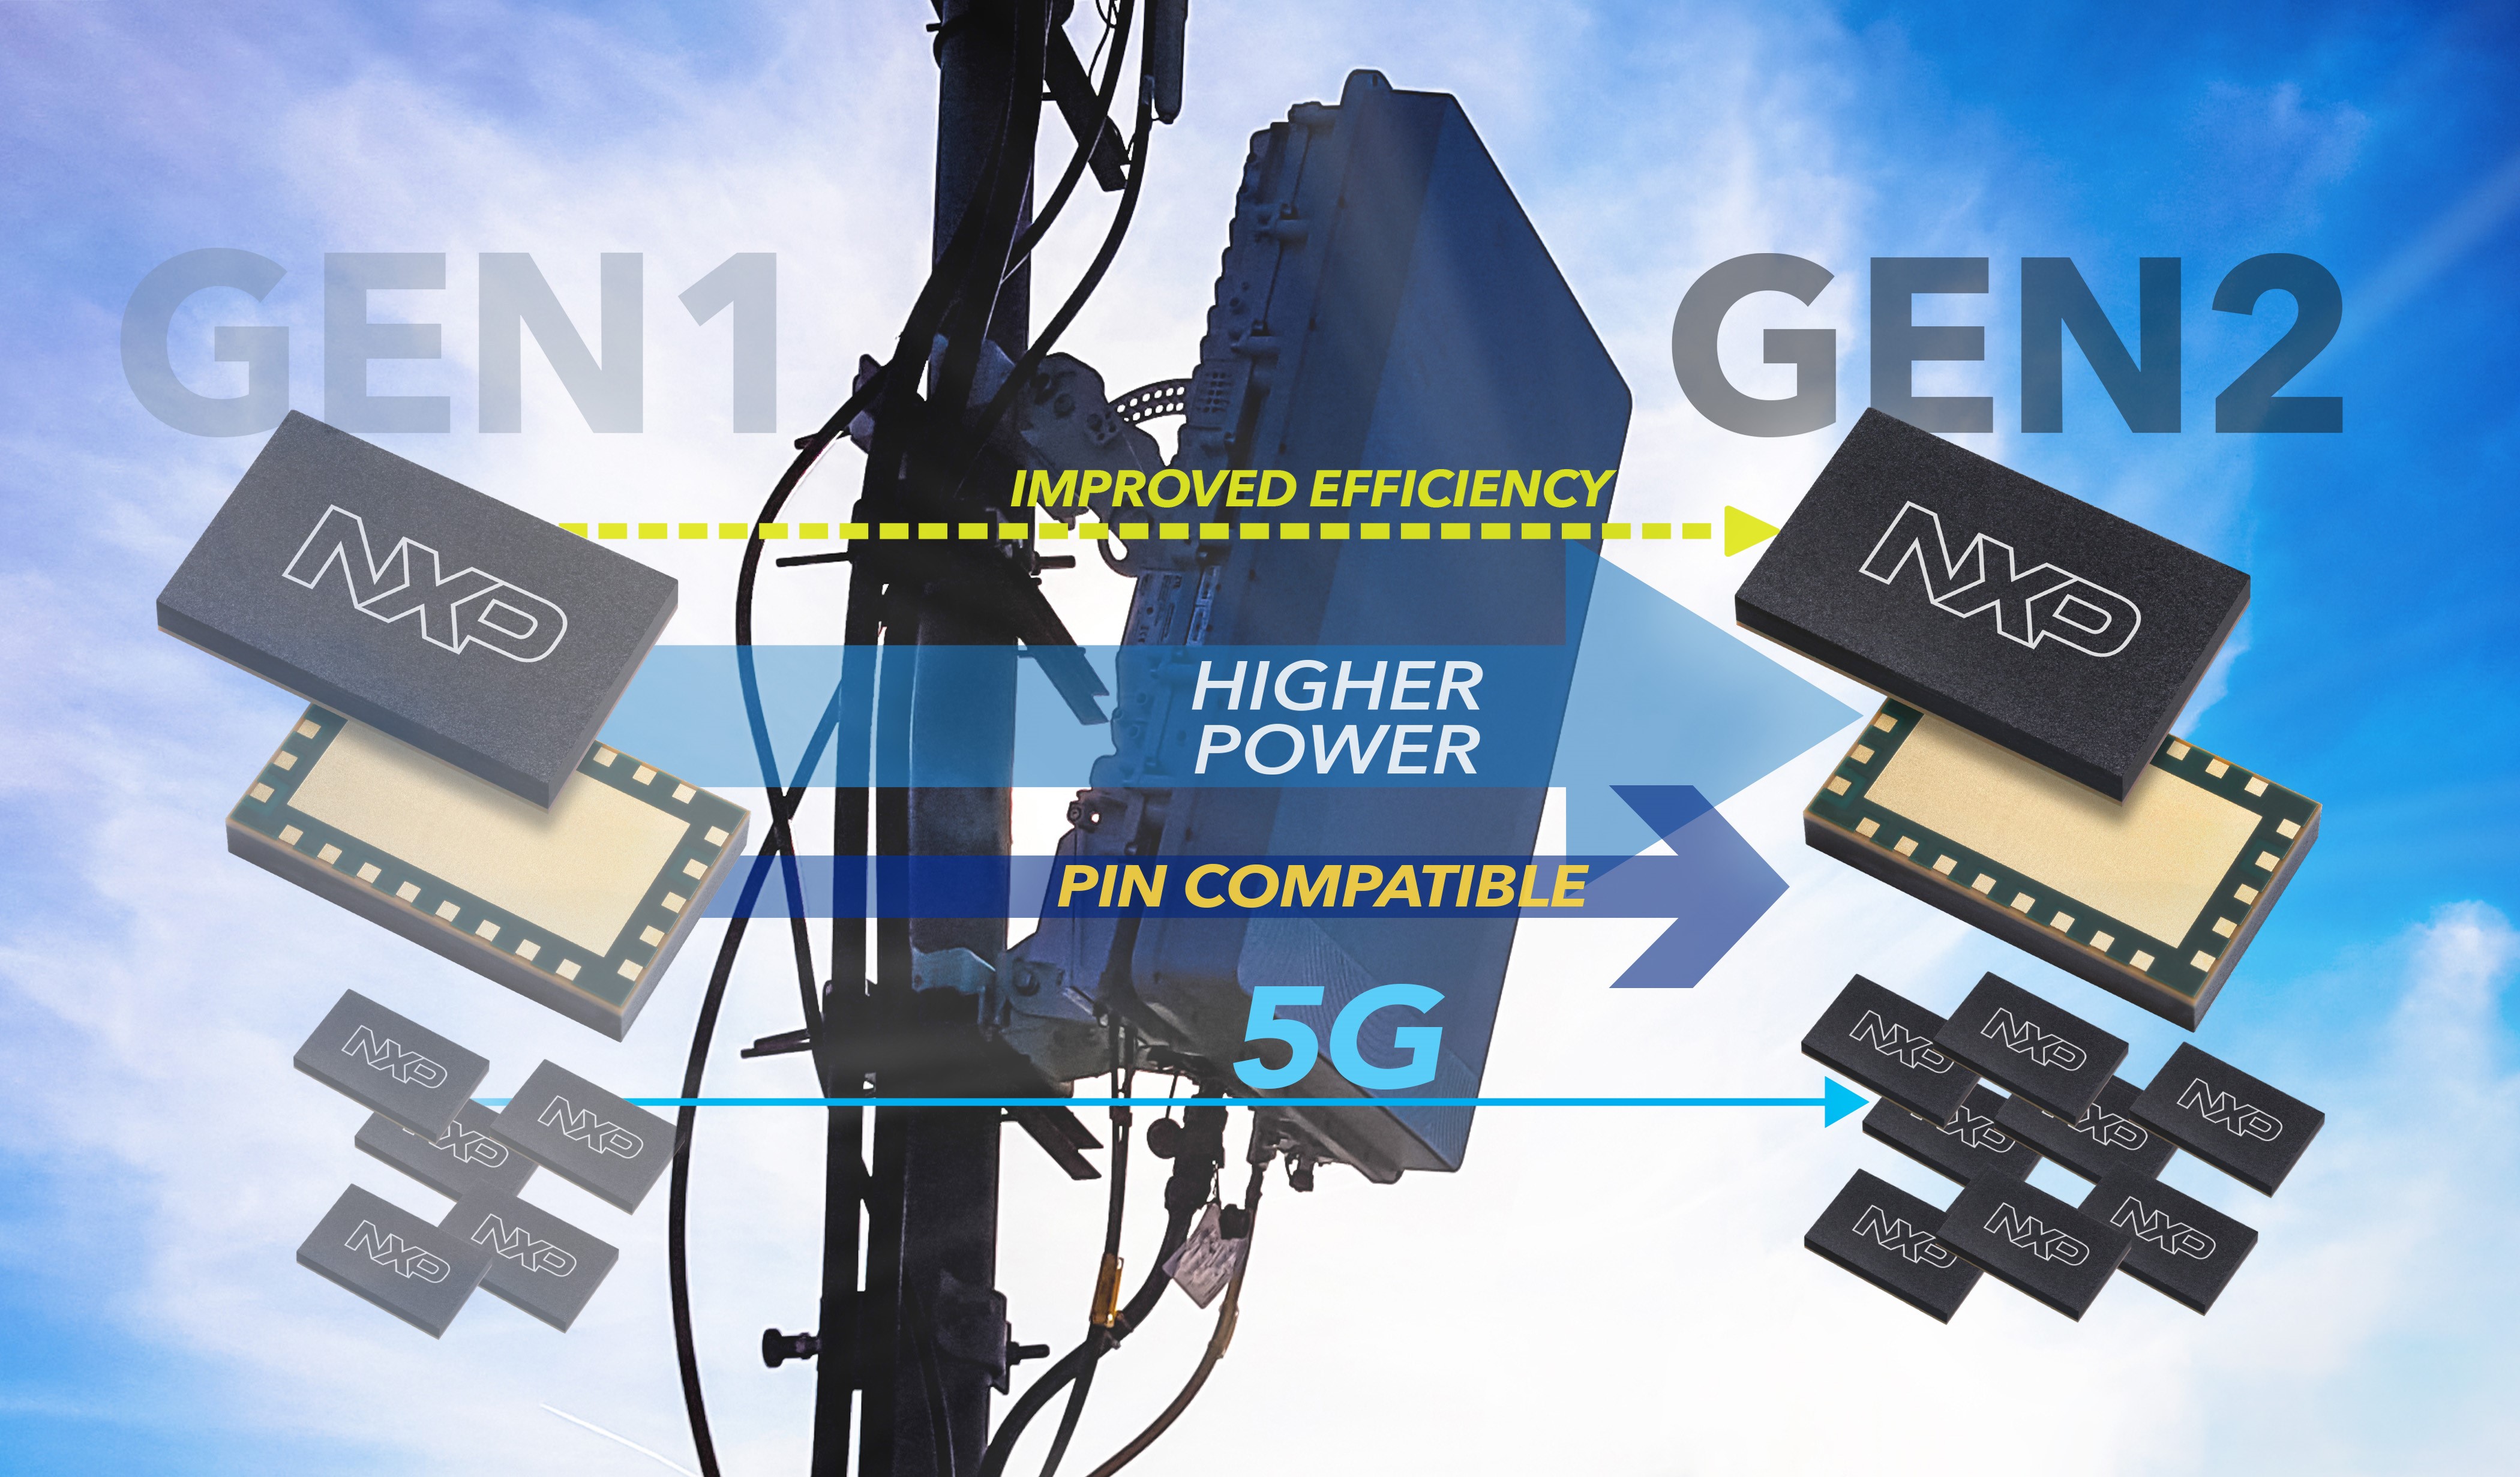 恩智浦推出提高频率、功率和效率的第2代射频多芯片模块，保持5G基础设施领先地位